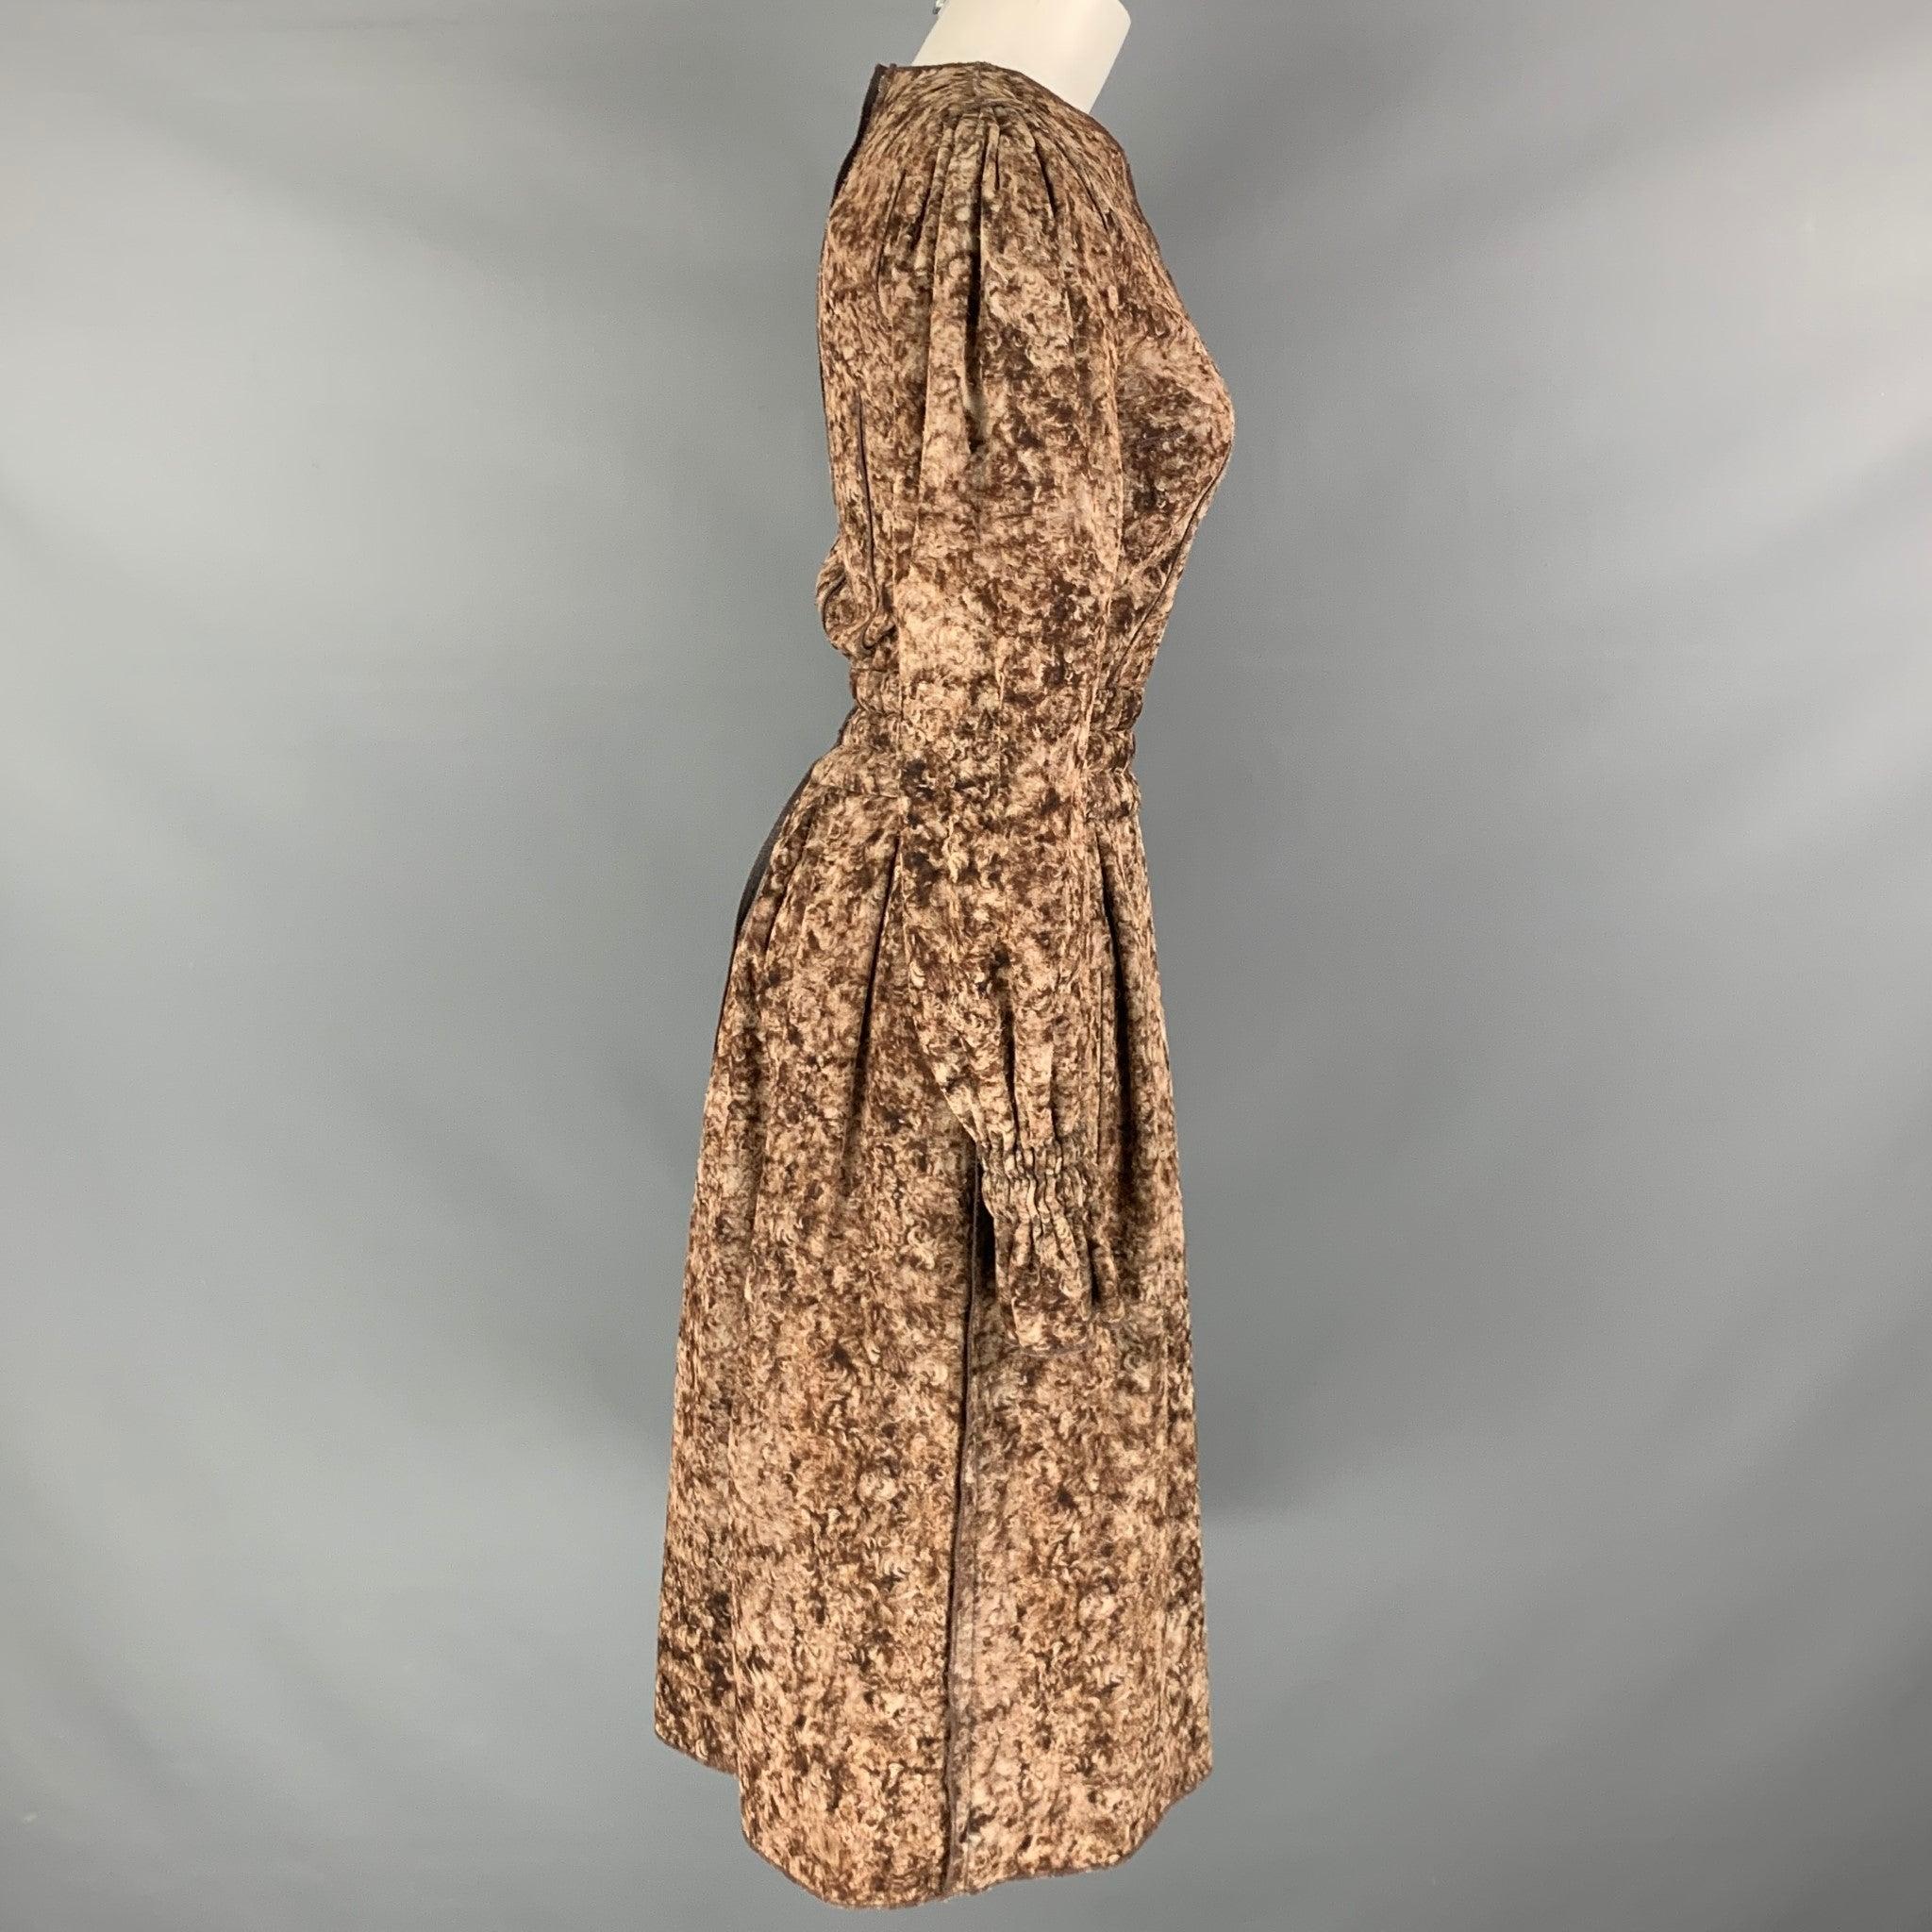 La robe DOLCE & GABBANA est confectionnée dans une matière tissée en laine marbrée marron et beige et présente des manches longues, des poches latérales, un style a-line, une taille élastique et des poignets élastiques. Fabriquées en Italie. Très